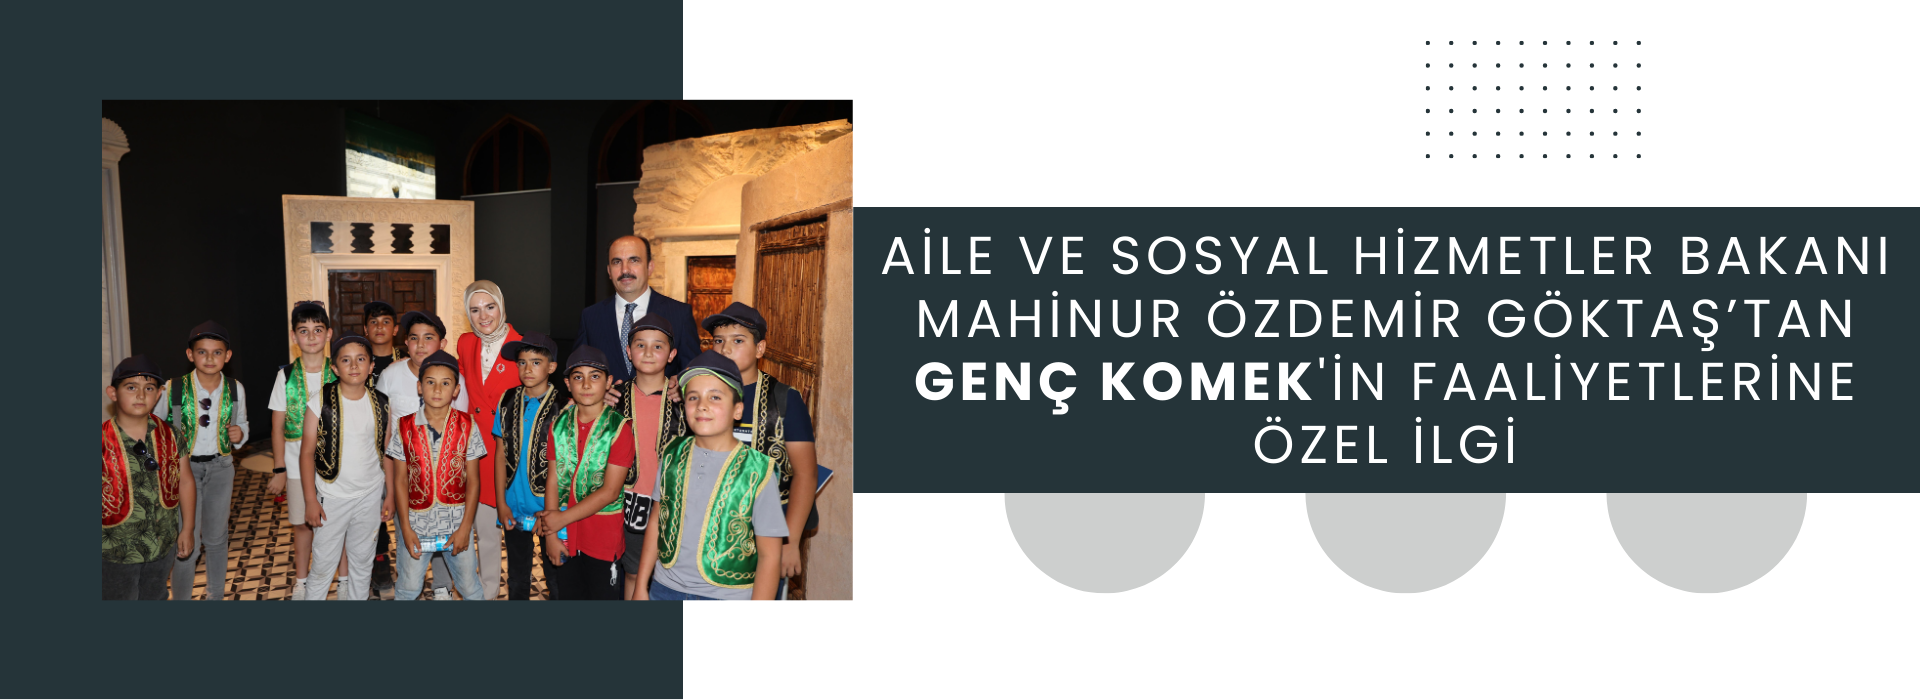 Aile ve Sosyal Hizmetler Bakanı Mahinur Özdemir Göktaş’tan Genç KOMEK'in Faaliyetlerine Özel İlgi